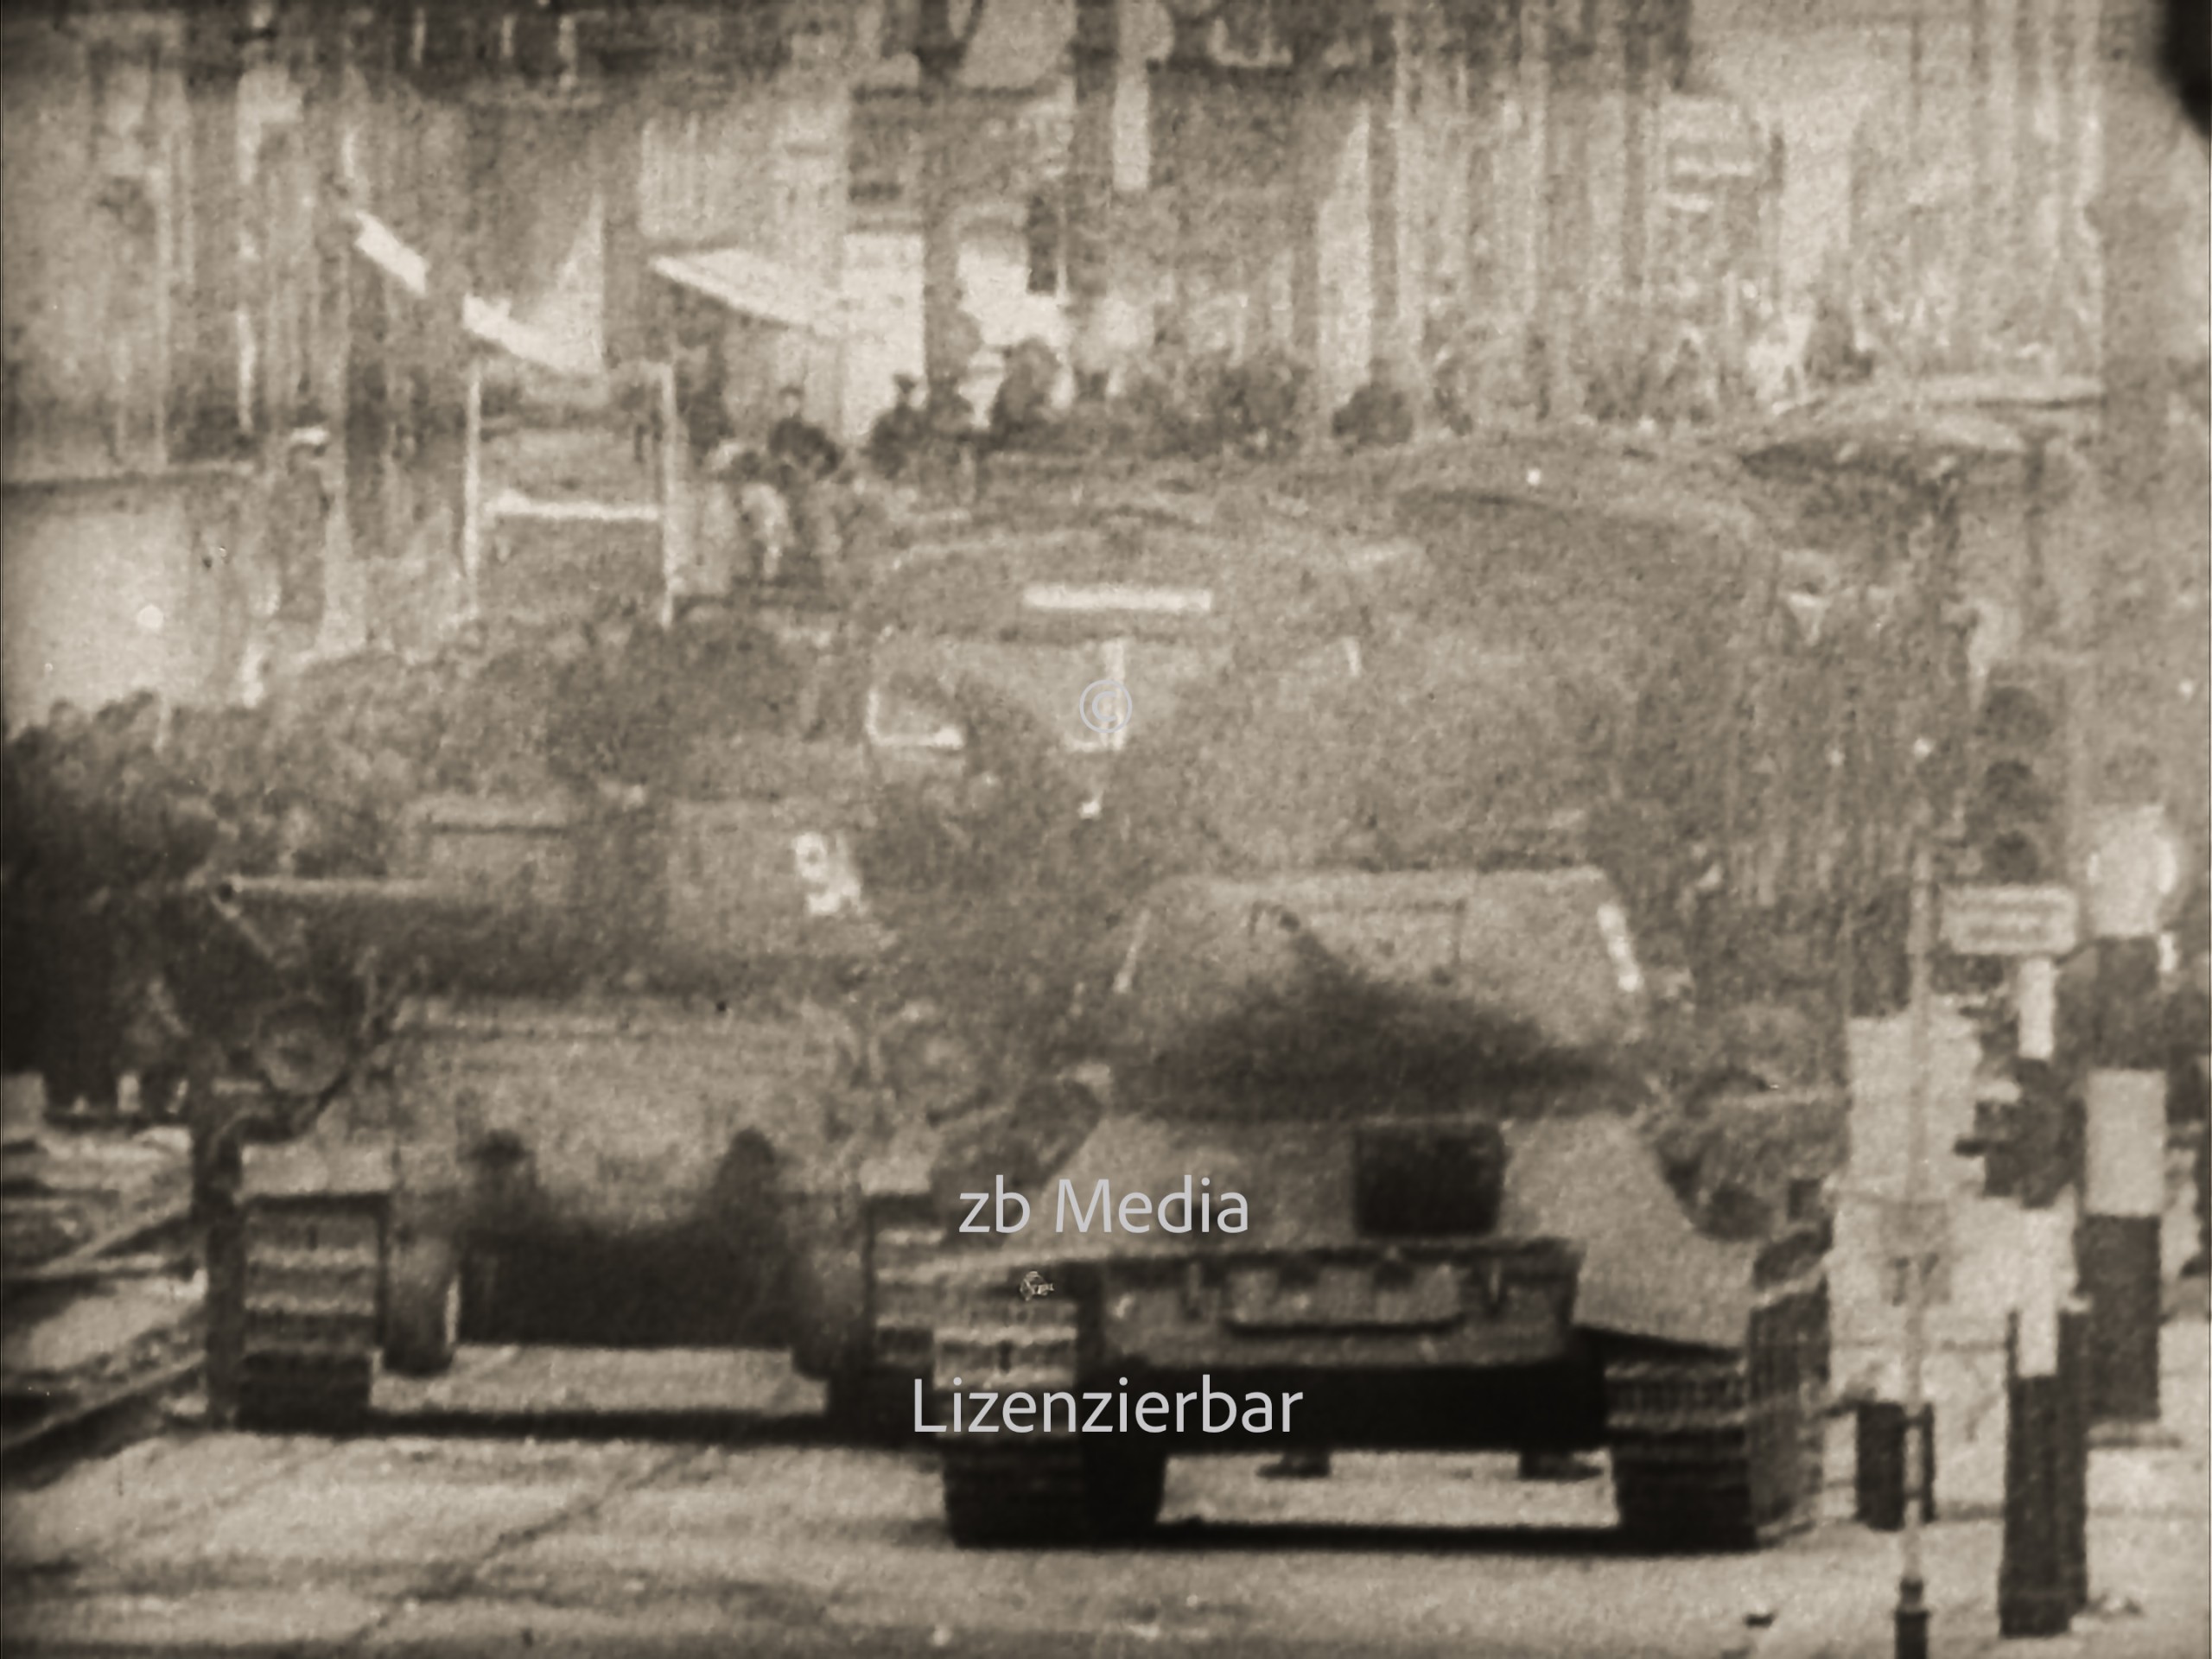 Sowjetische Panzer in Berlin am 17. Juni 1953